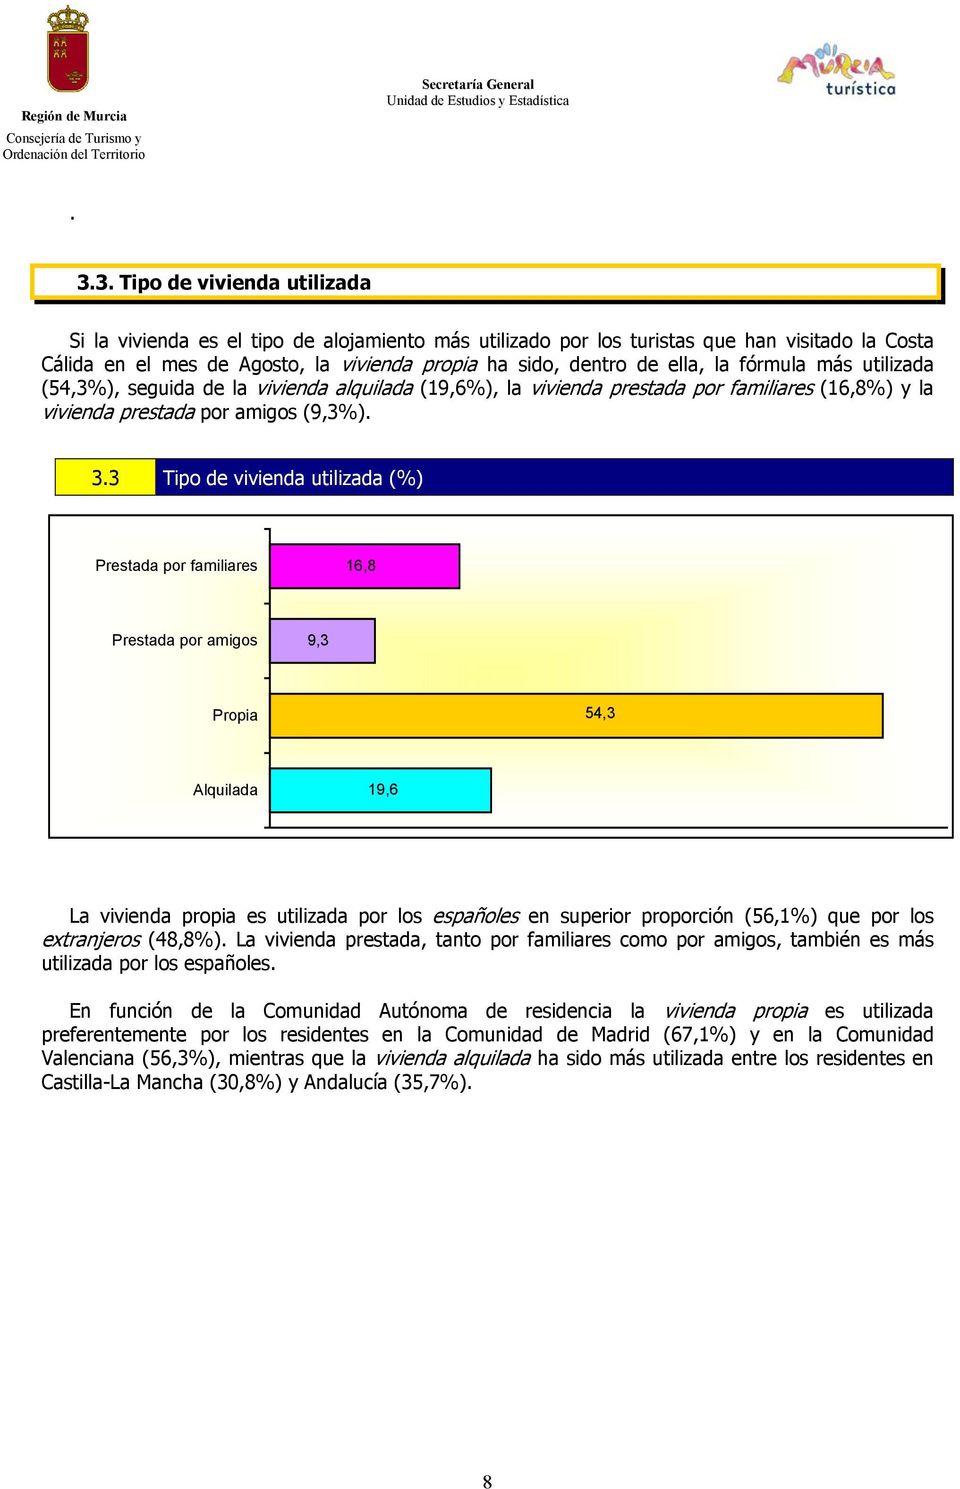 3 Tipo de vivienda utilizada (%) Prestada por familiares 16,8 Prestada por amigos 9,3 Propia 54,3 Alquilada 19,6 La vivienda propia es utilizada por los españoles en superior proporción (56,1%) que